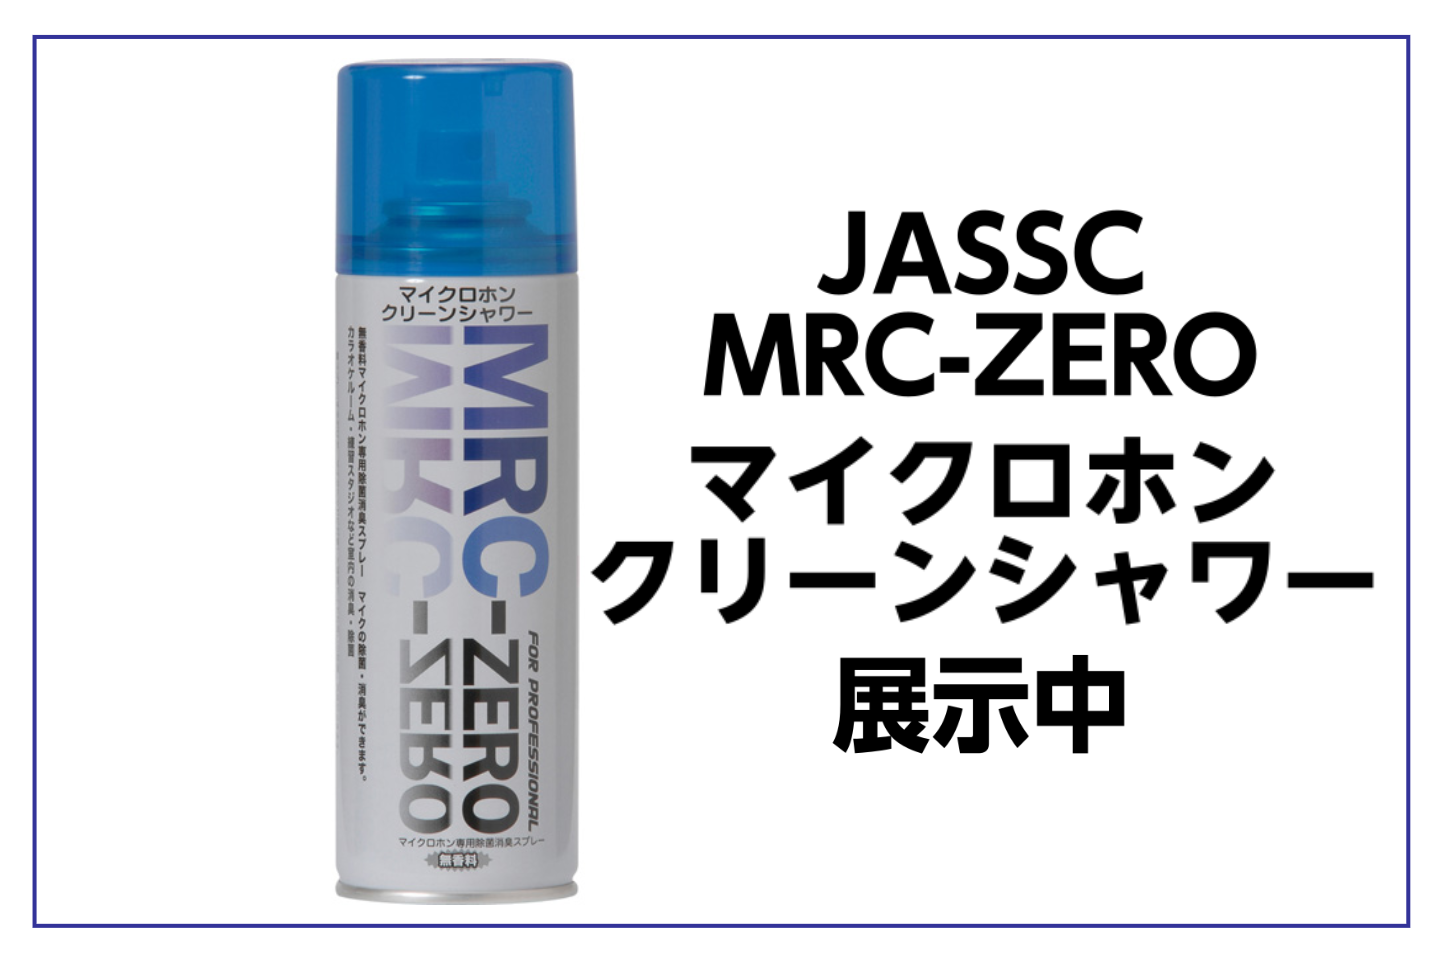 【お手入れグッズ】JASSC MRC-ZERO マイクロホンクリーンシャワー展示中!!(マイクのお手入れ・消臭)